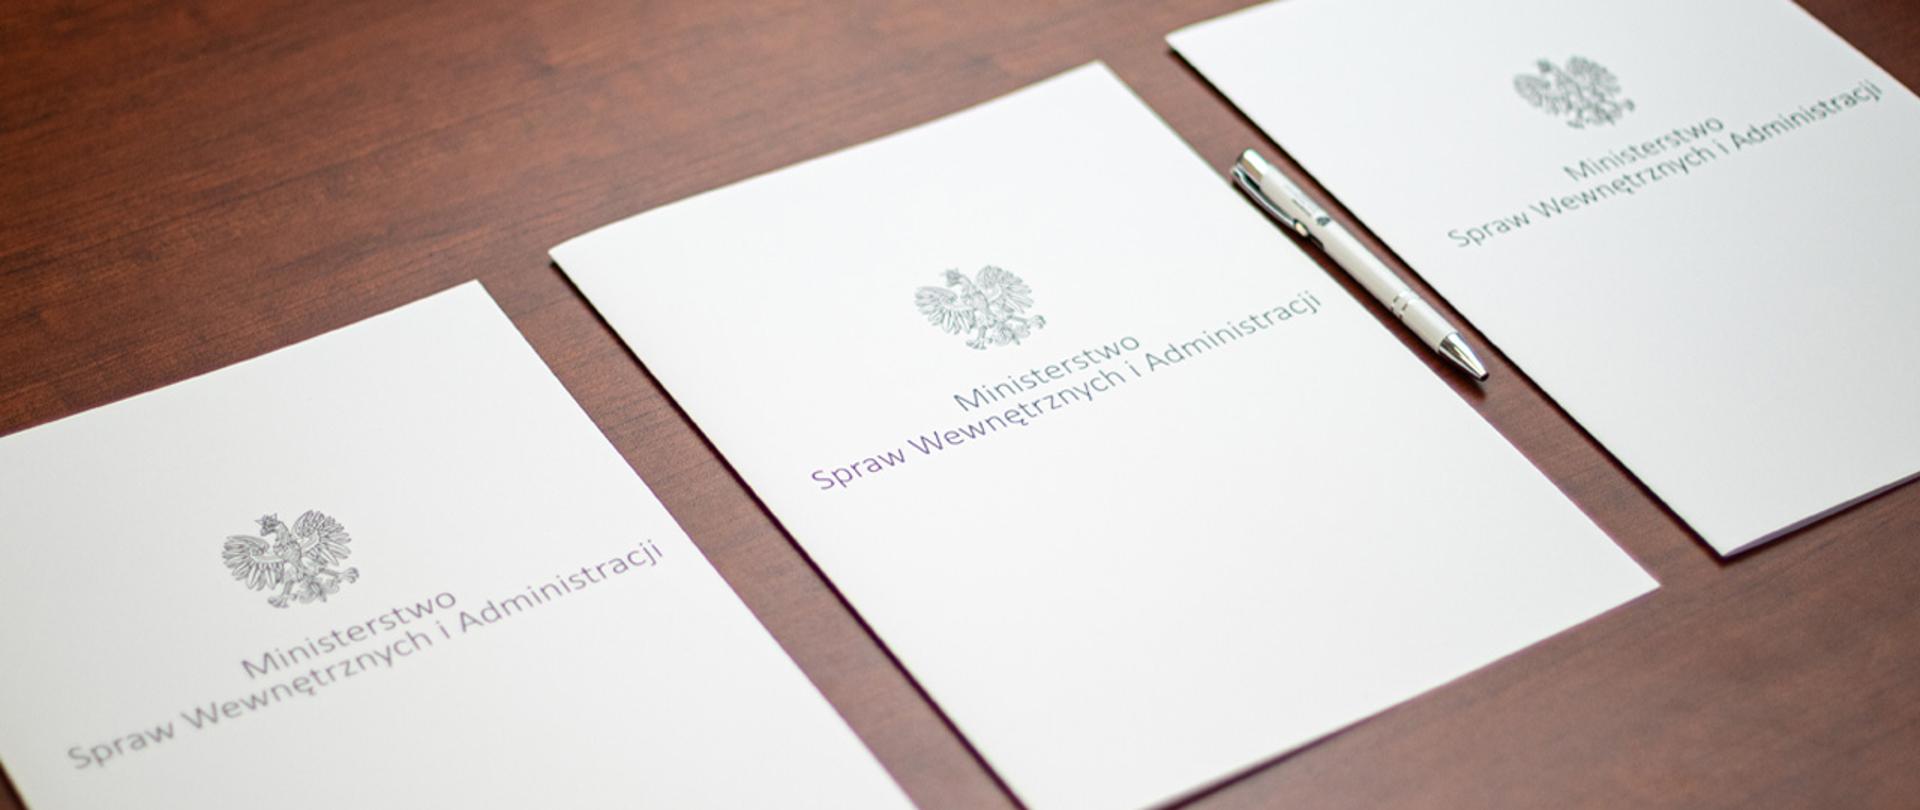 Trzy teczki z napisem Ministerstwo Spraw Wewnętrznych i Administracji